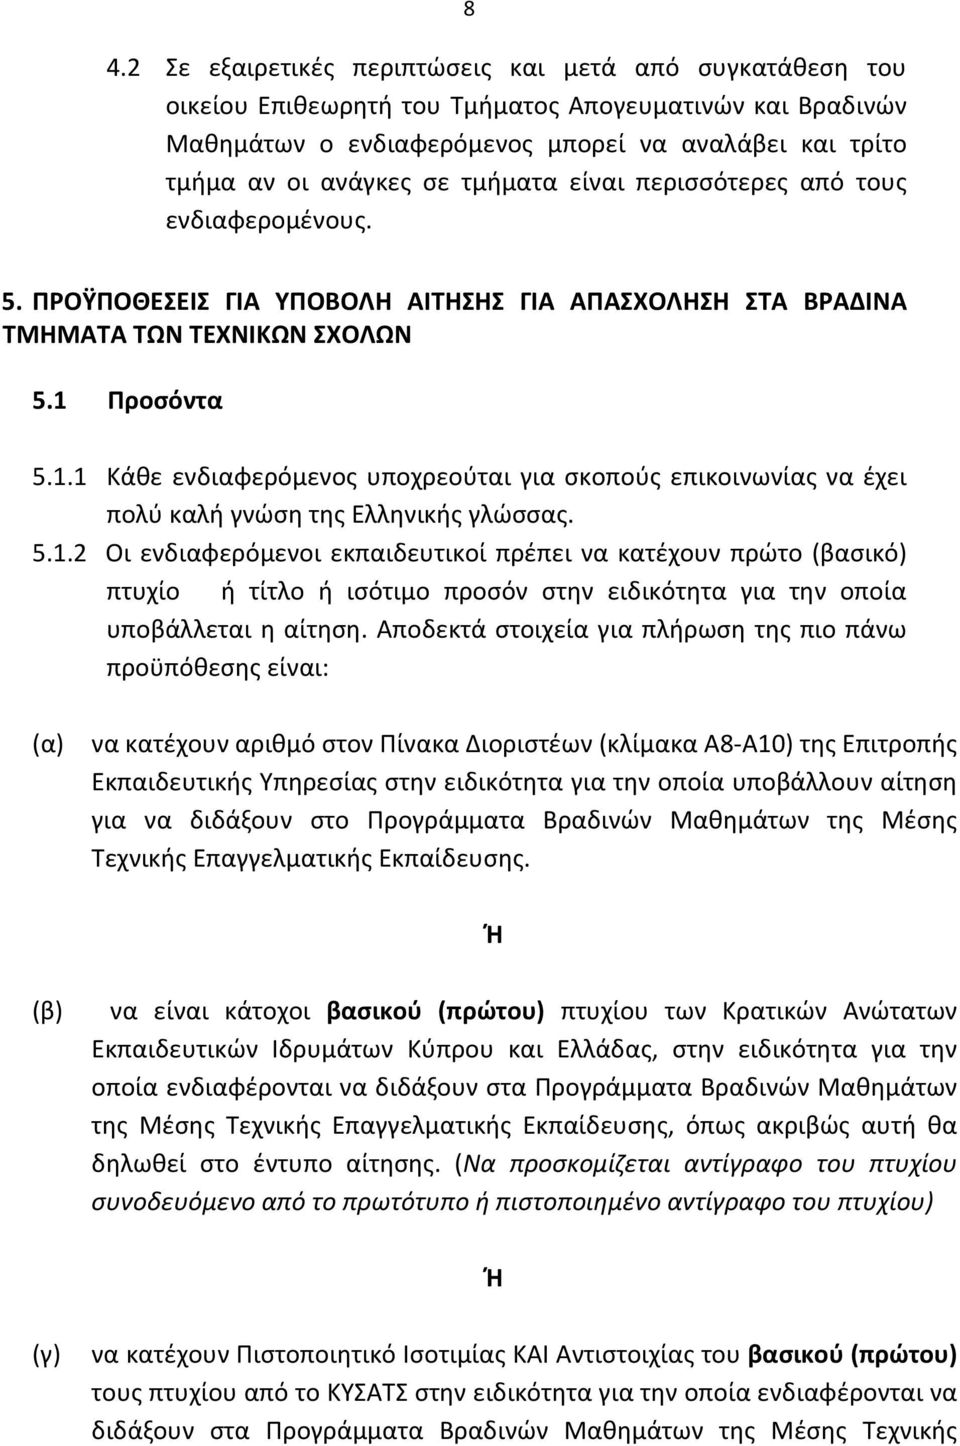 Προσόντα 5.1.1 Κάθε ενδιαφερόμενος υποχρεούται για σκοπούς επικοινωνίας να έχει πολύ καλή γνώση της Ελληνικής γλώσσας. 5.1.2 Οι ενδιαφερόμενοι εκπαιδευτικοί πρέπει να κατέχουν πρώτο (βασικό) πτυχίο ή τίτλο ή ισότιμο προσόν στην ειδικότητα για την οποία υποβάλλεται η αίτηση.